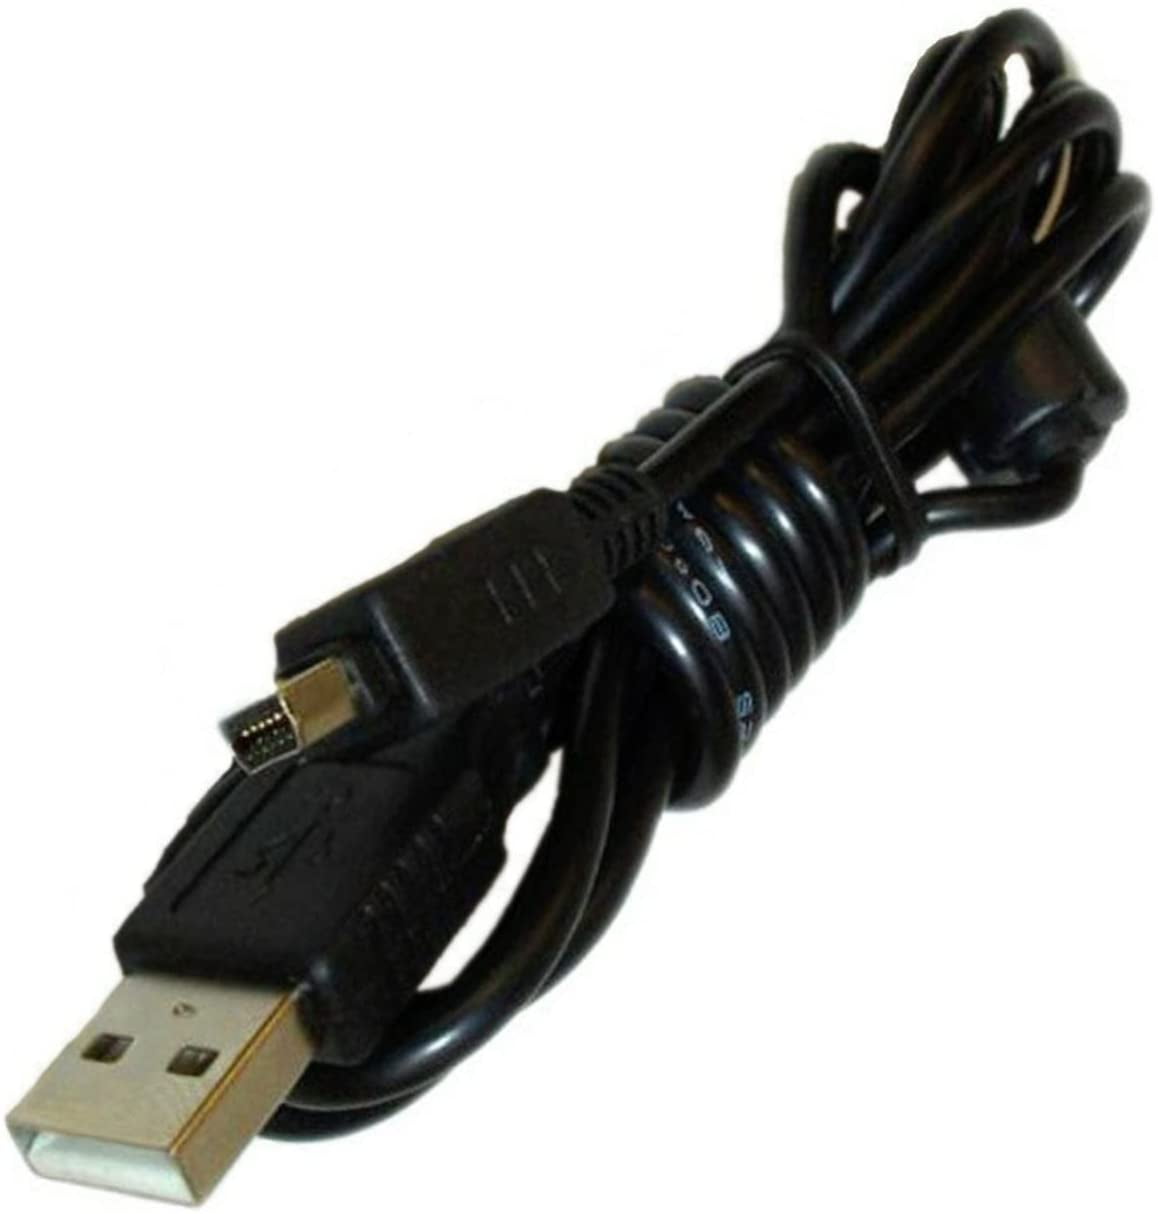 USB Charger Data SYNC Cable Cord for Olympus Evolt E-330 E-410 E500 E510 